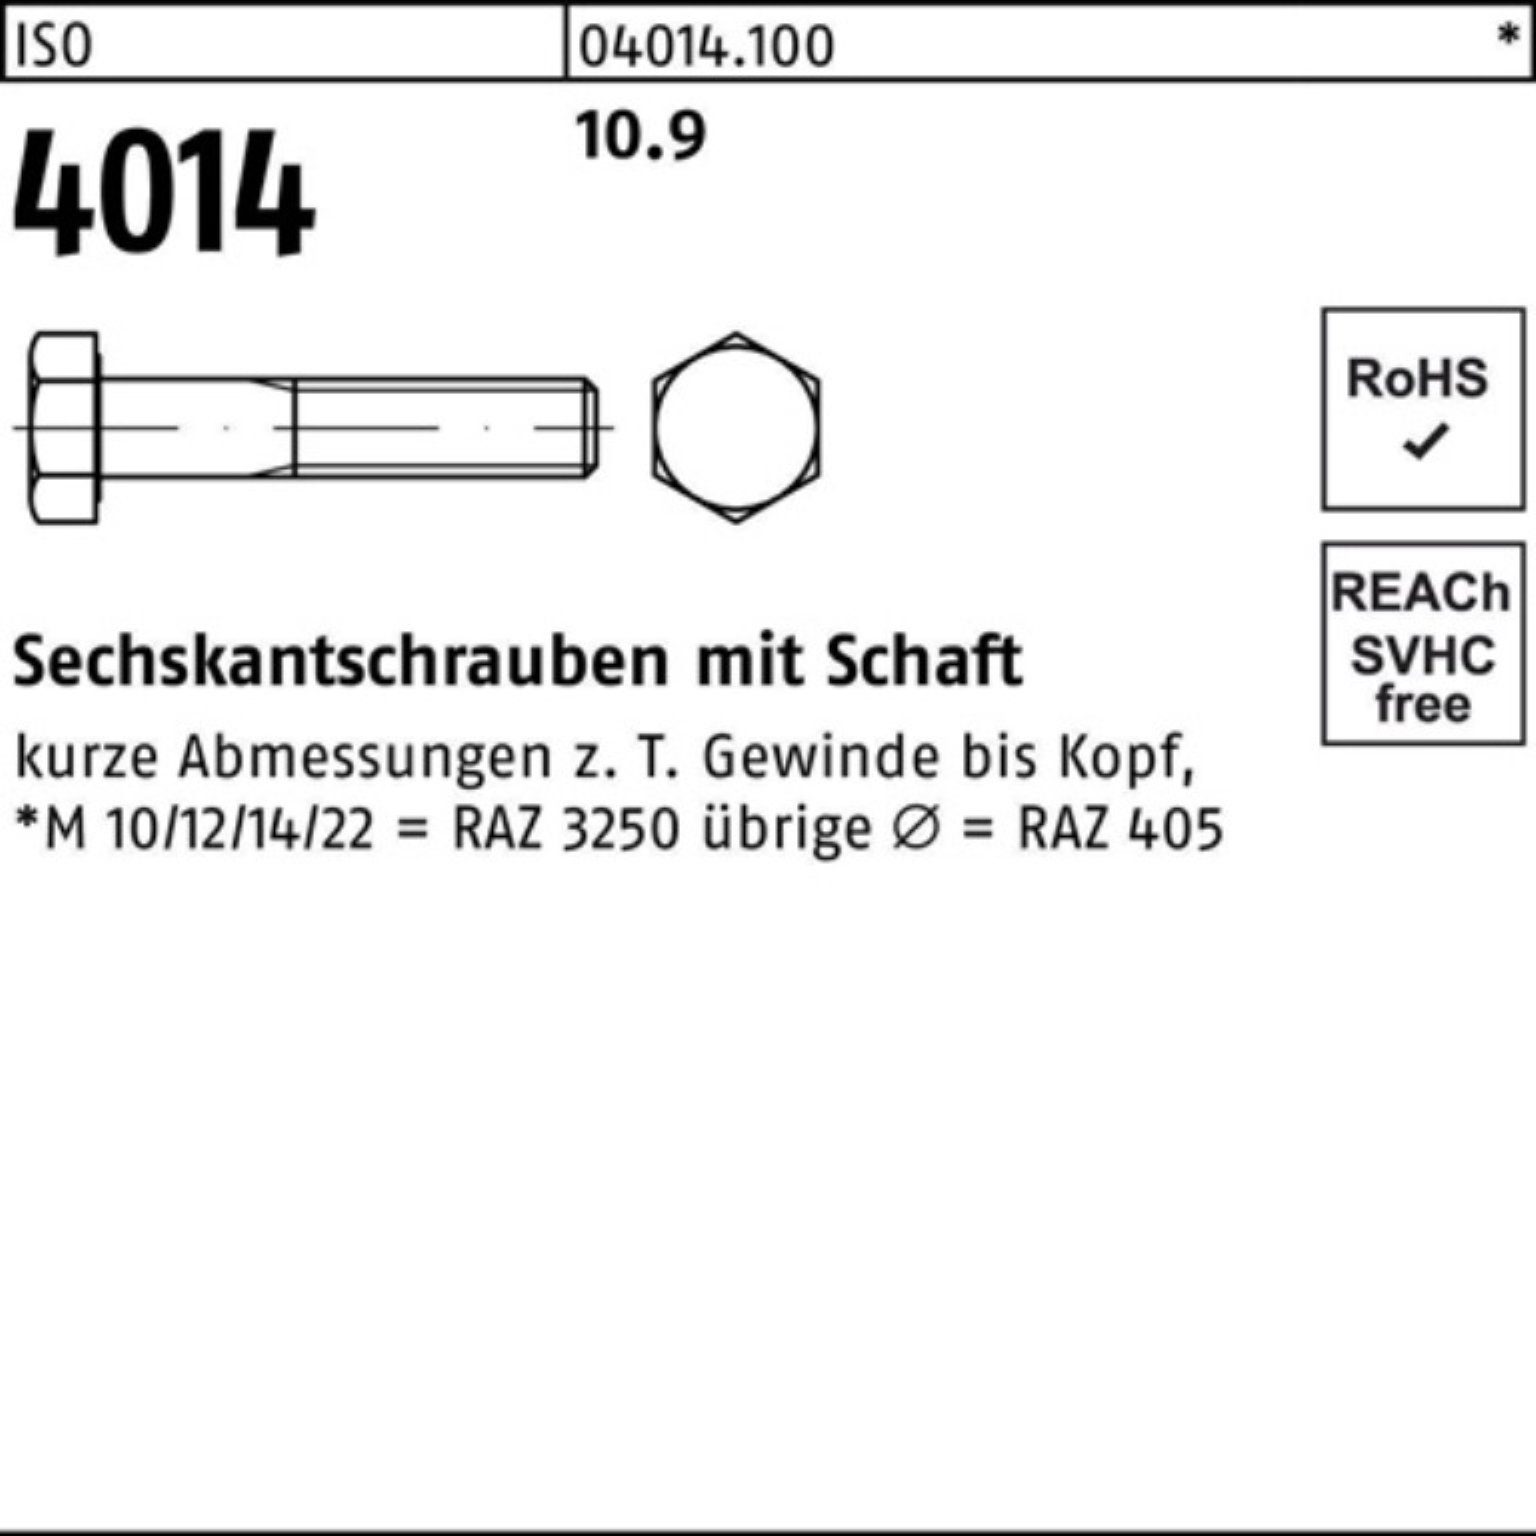 Bufab Sechskantschraube 100er Pack 10.9 IS 240 ISO Schaft Sechskantschraube 4014 M22x Stück 1